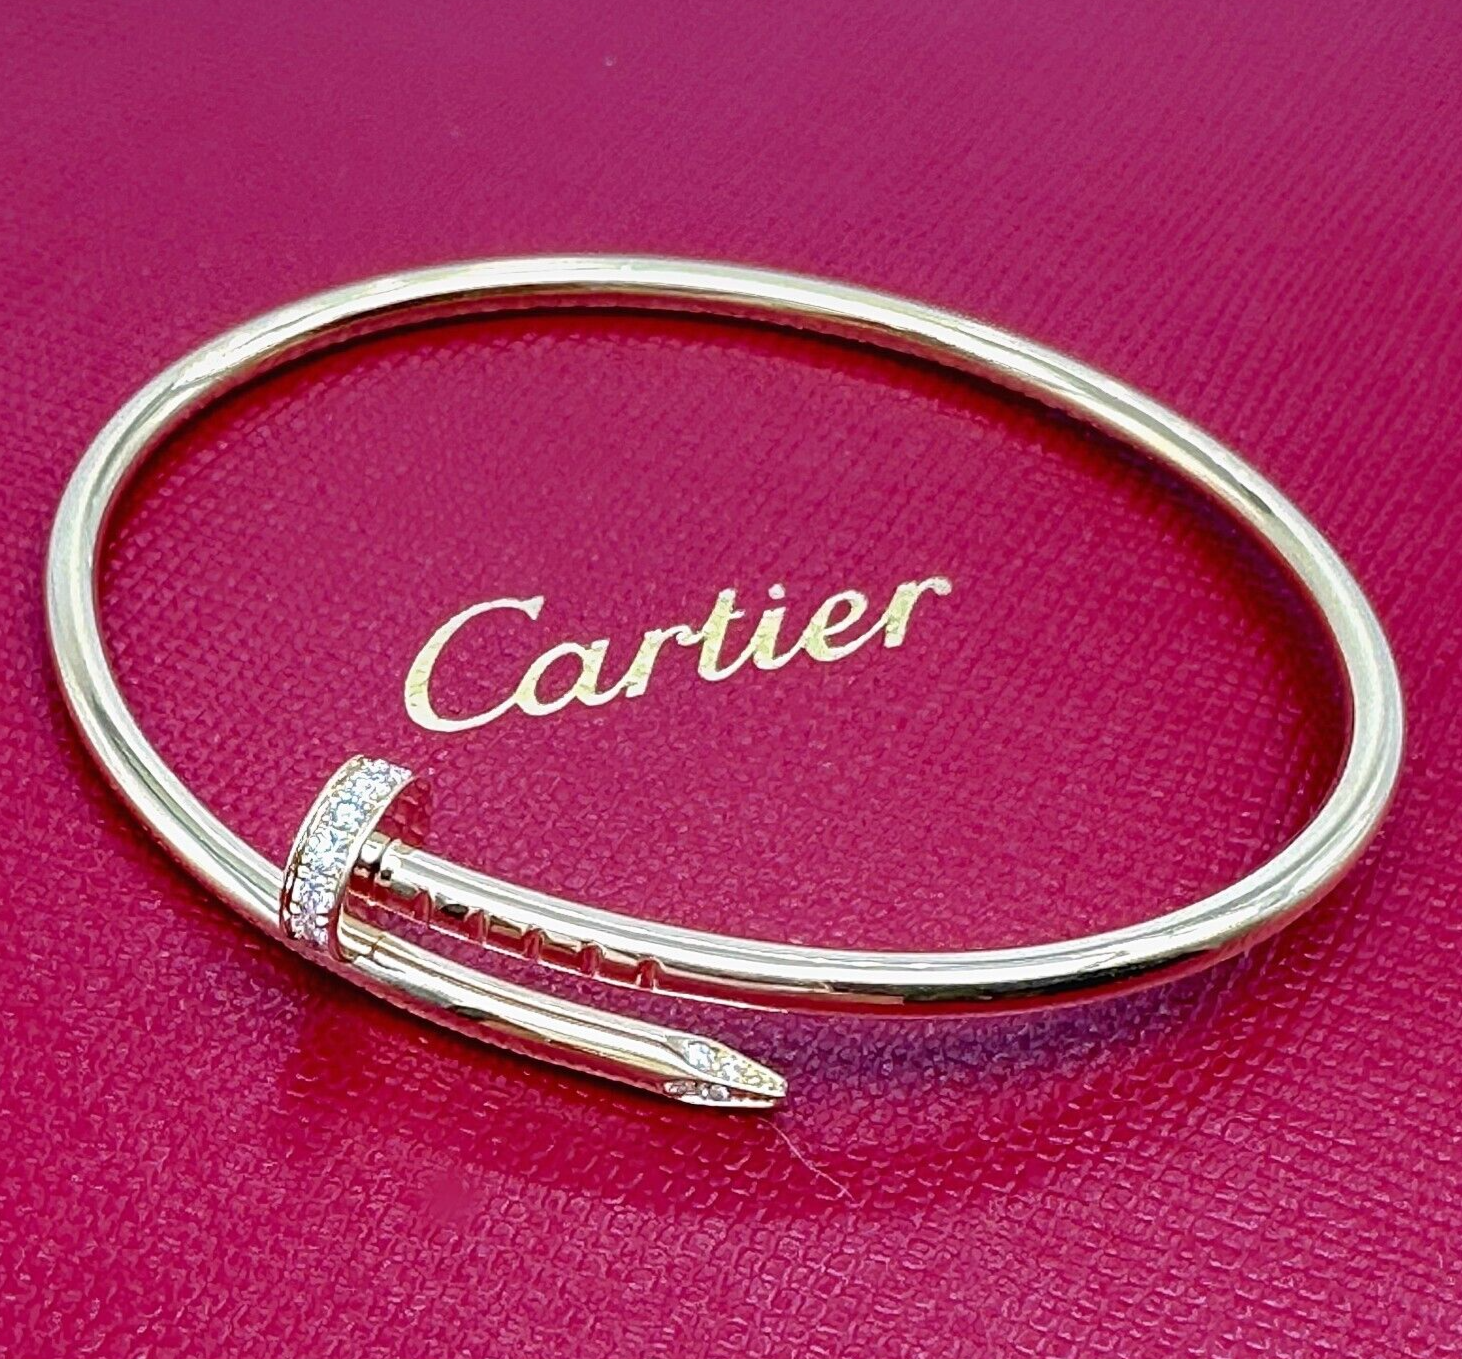 Cartier Juste Un Clou Diamonds 18kt Yellow Gold Bangle Bracelet